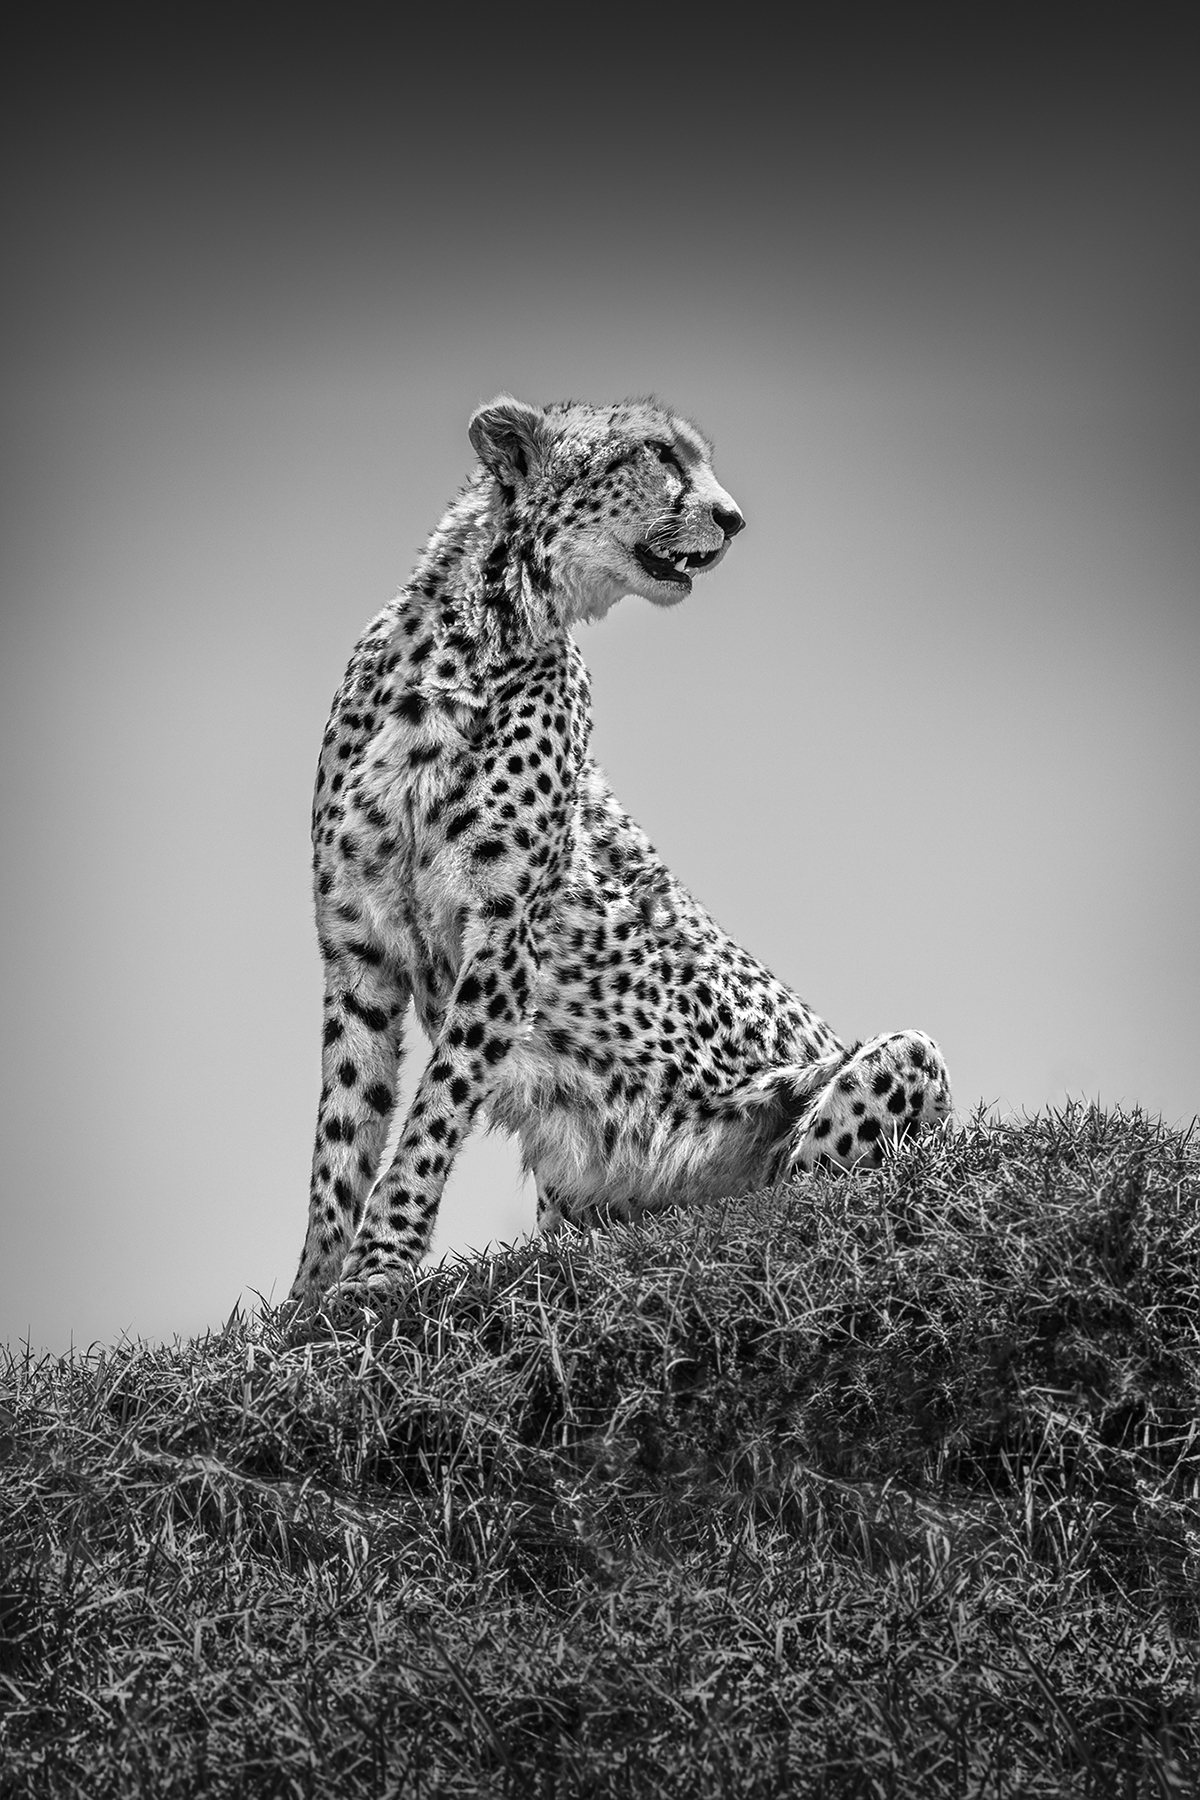 A cheetah sitting on a hill